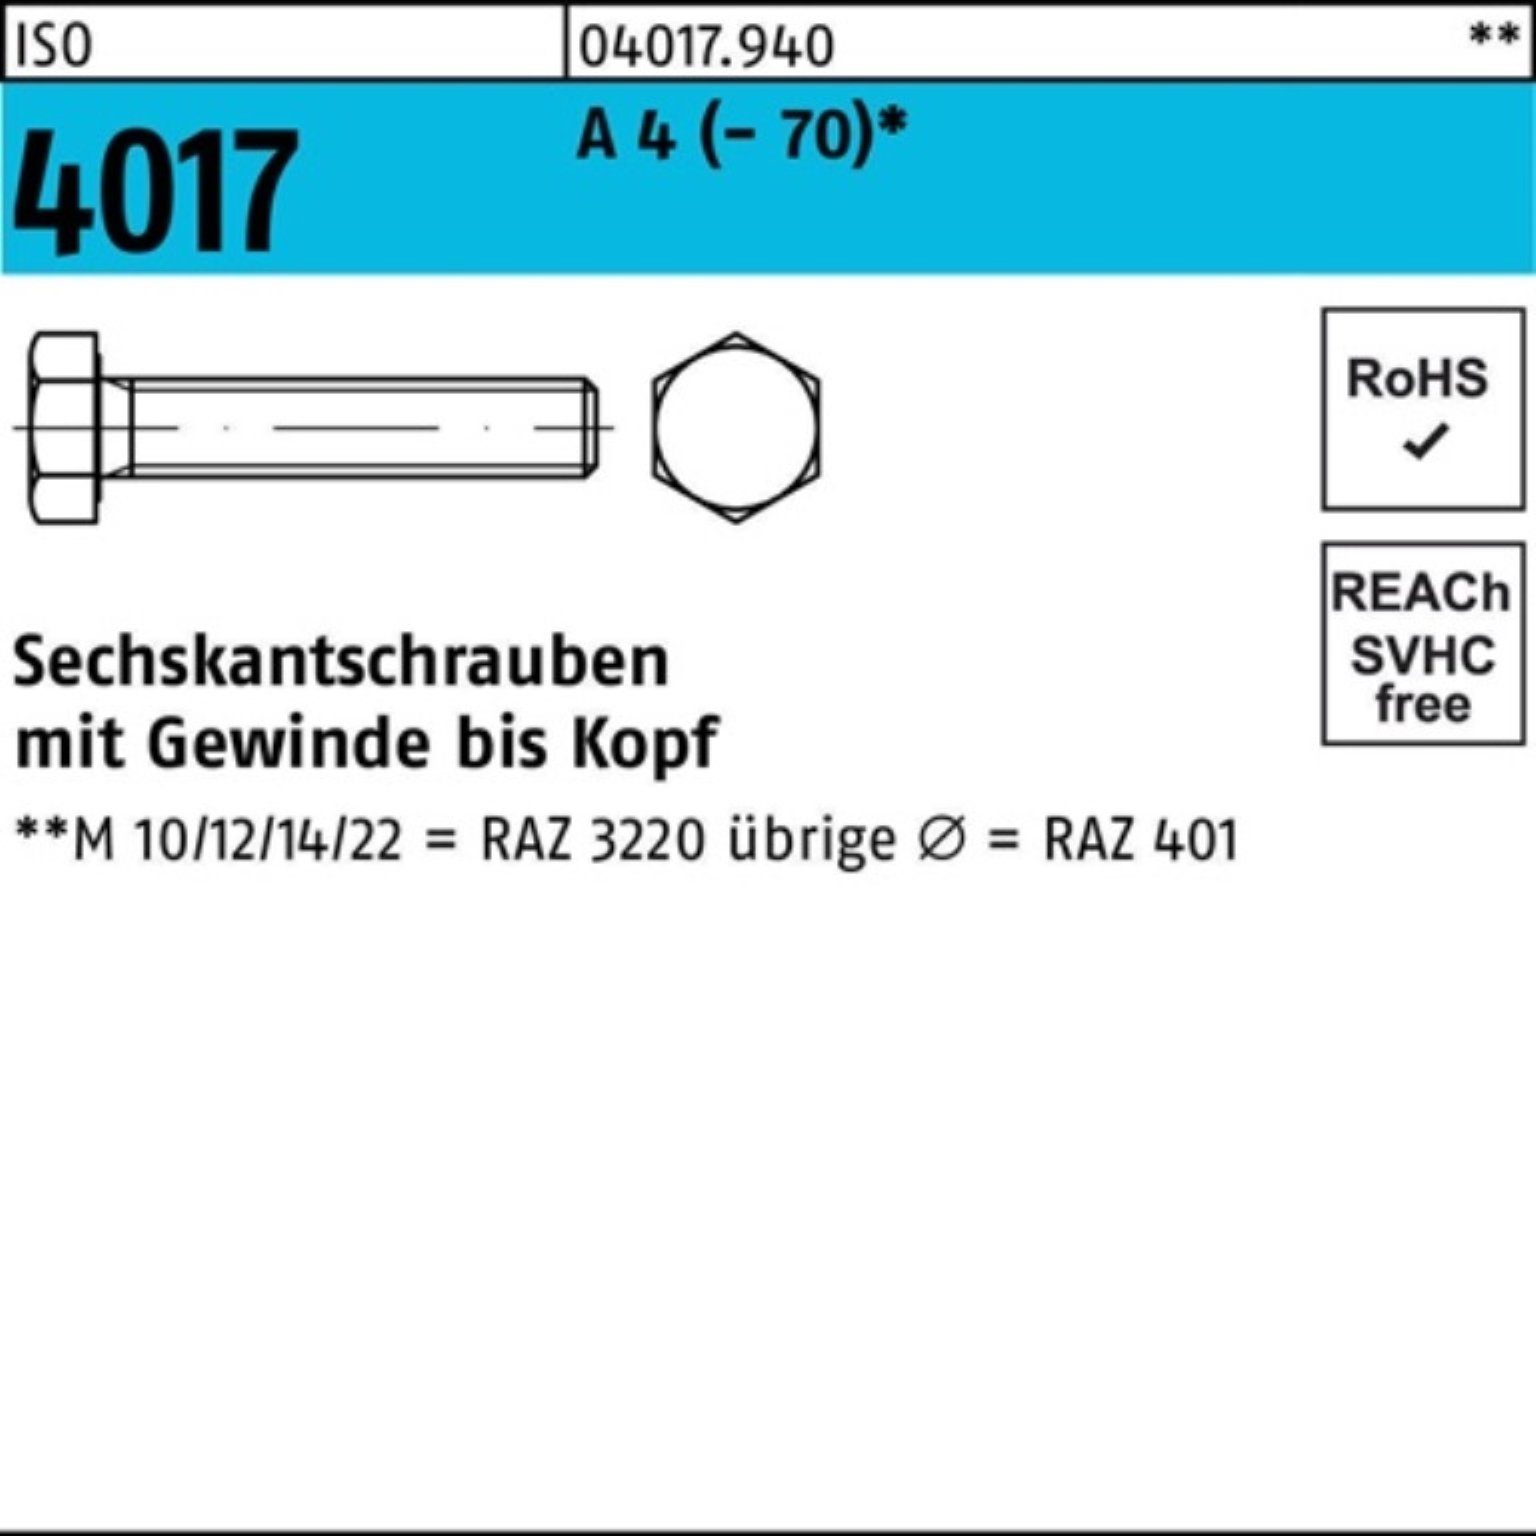 Bufab Sechskantschraube 100er Pack Sechskantschraube ISO 4017 VG M10x 55 A 4 (70) 100 Stück